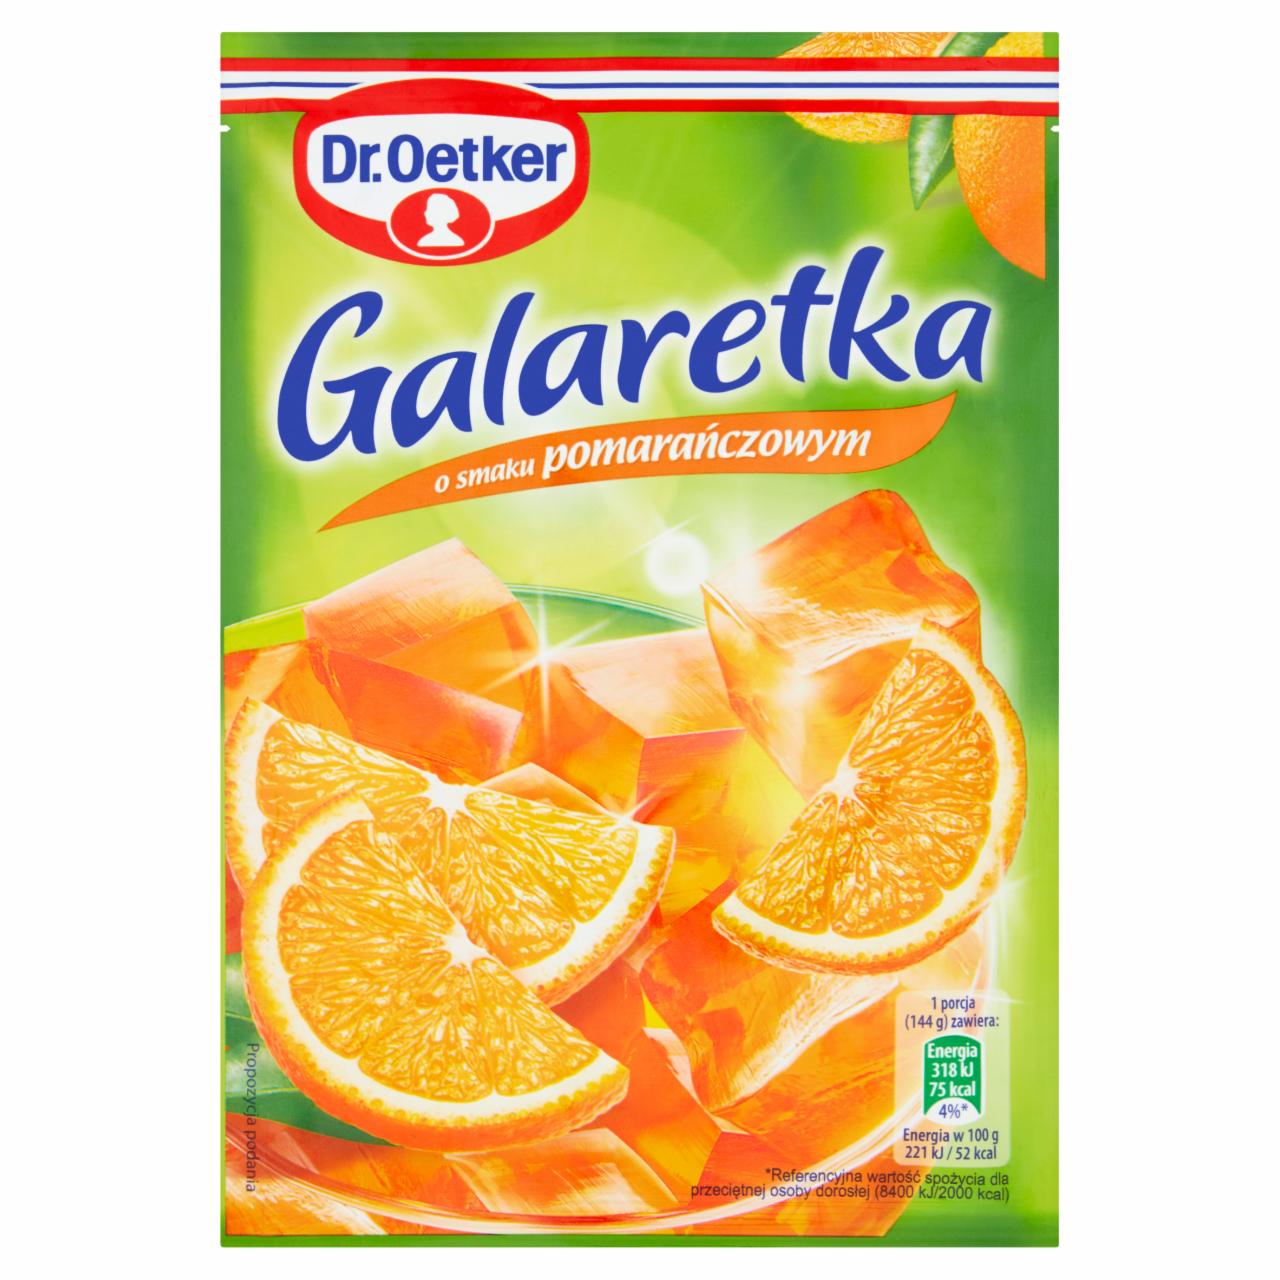 Фото - Galaretka o smaku pomarańczowym Dr. Oetker